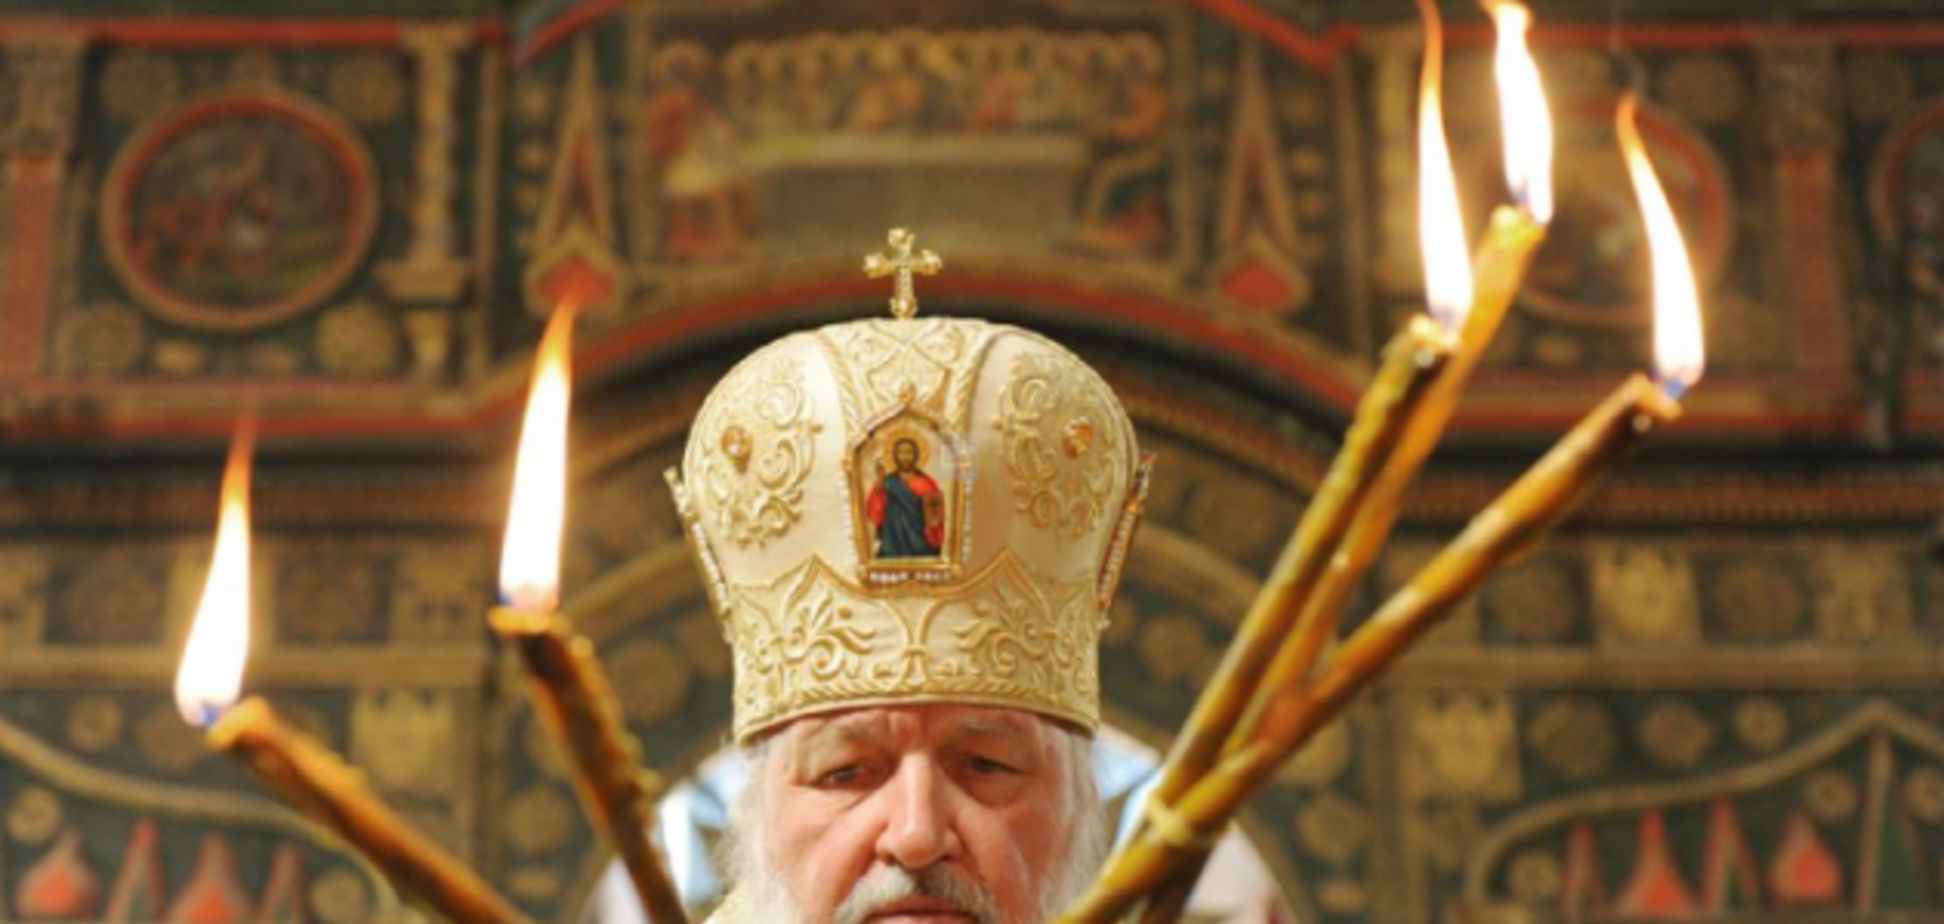 Как в КГБ: фото из российской церкви взбудоражило сеть